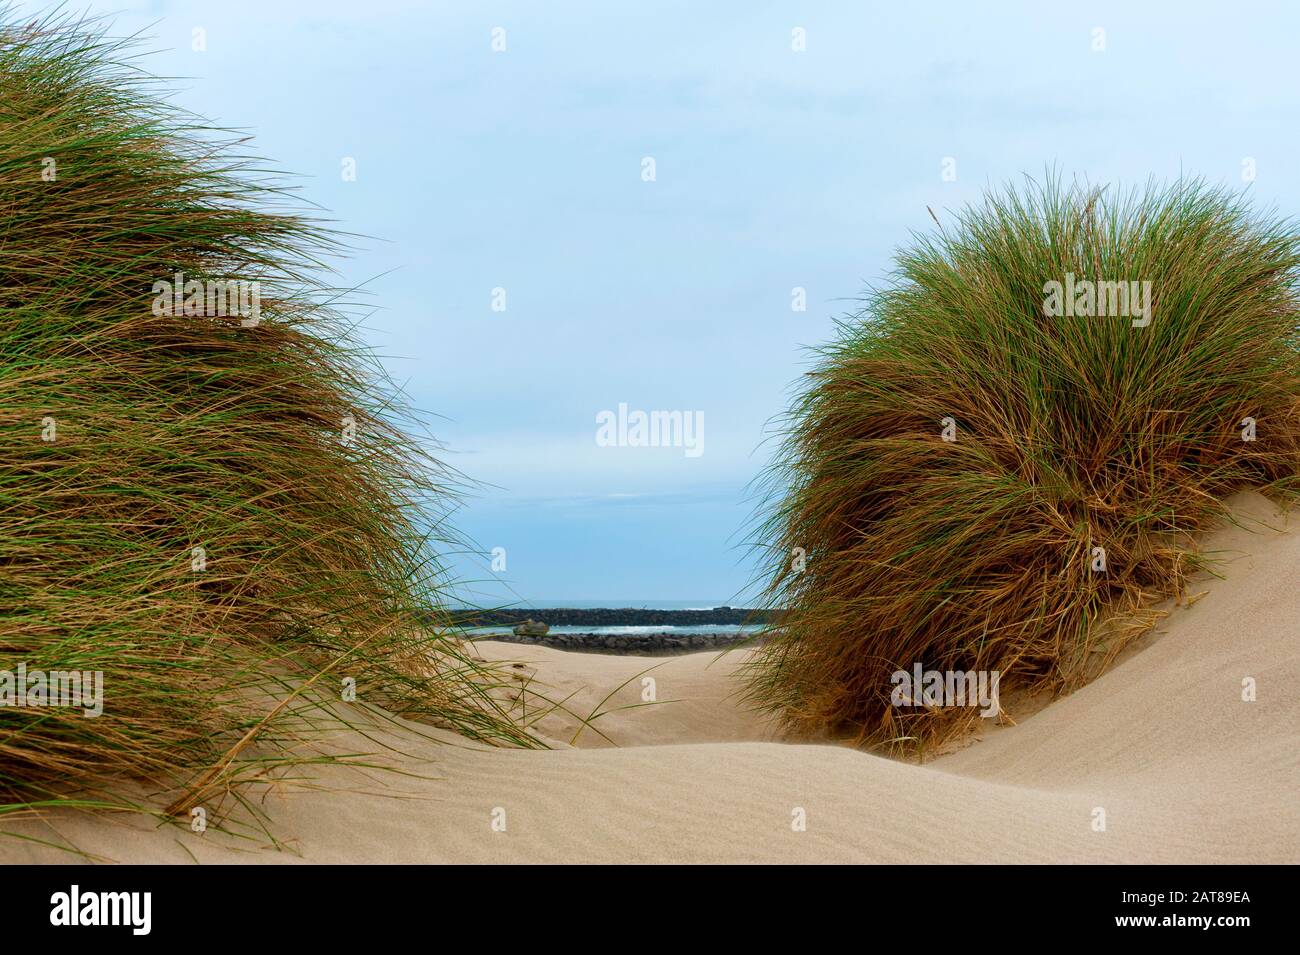 Molo del fiume Umpqua e spiaggia con dune di sabbia e grandi tufi di erba di mare che crescono nella sabbia. Foto Stock